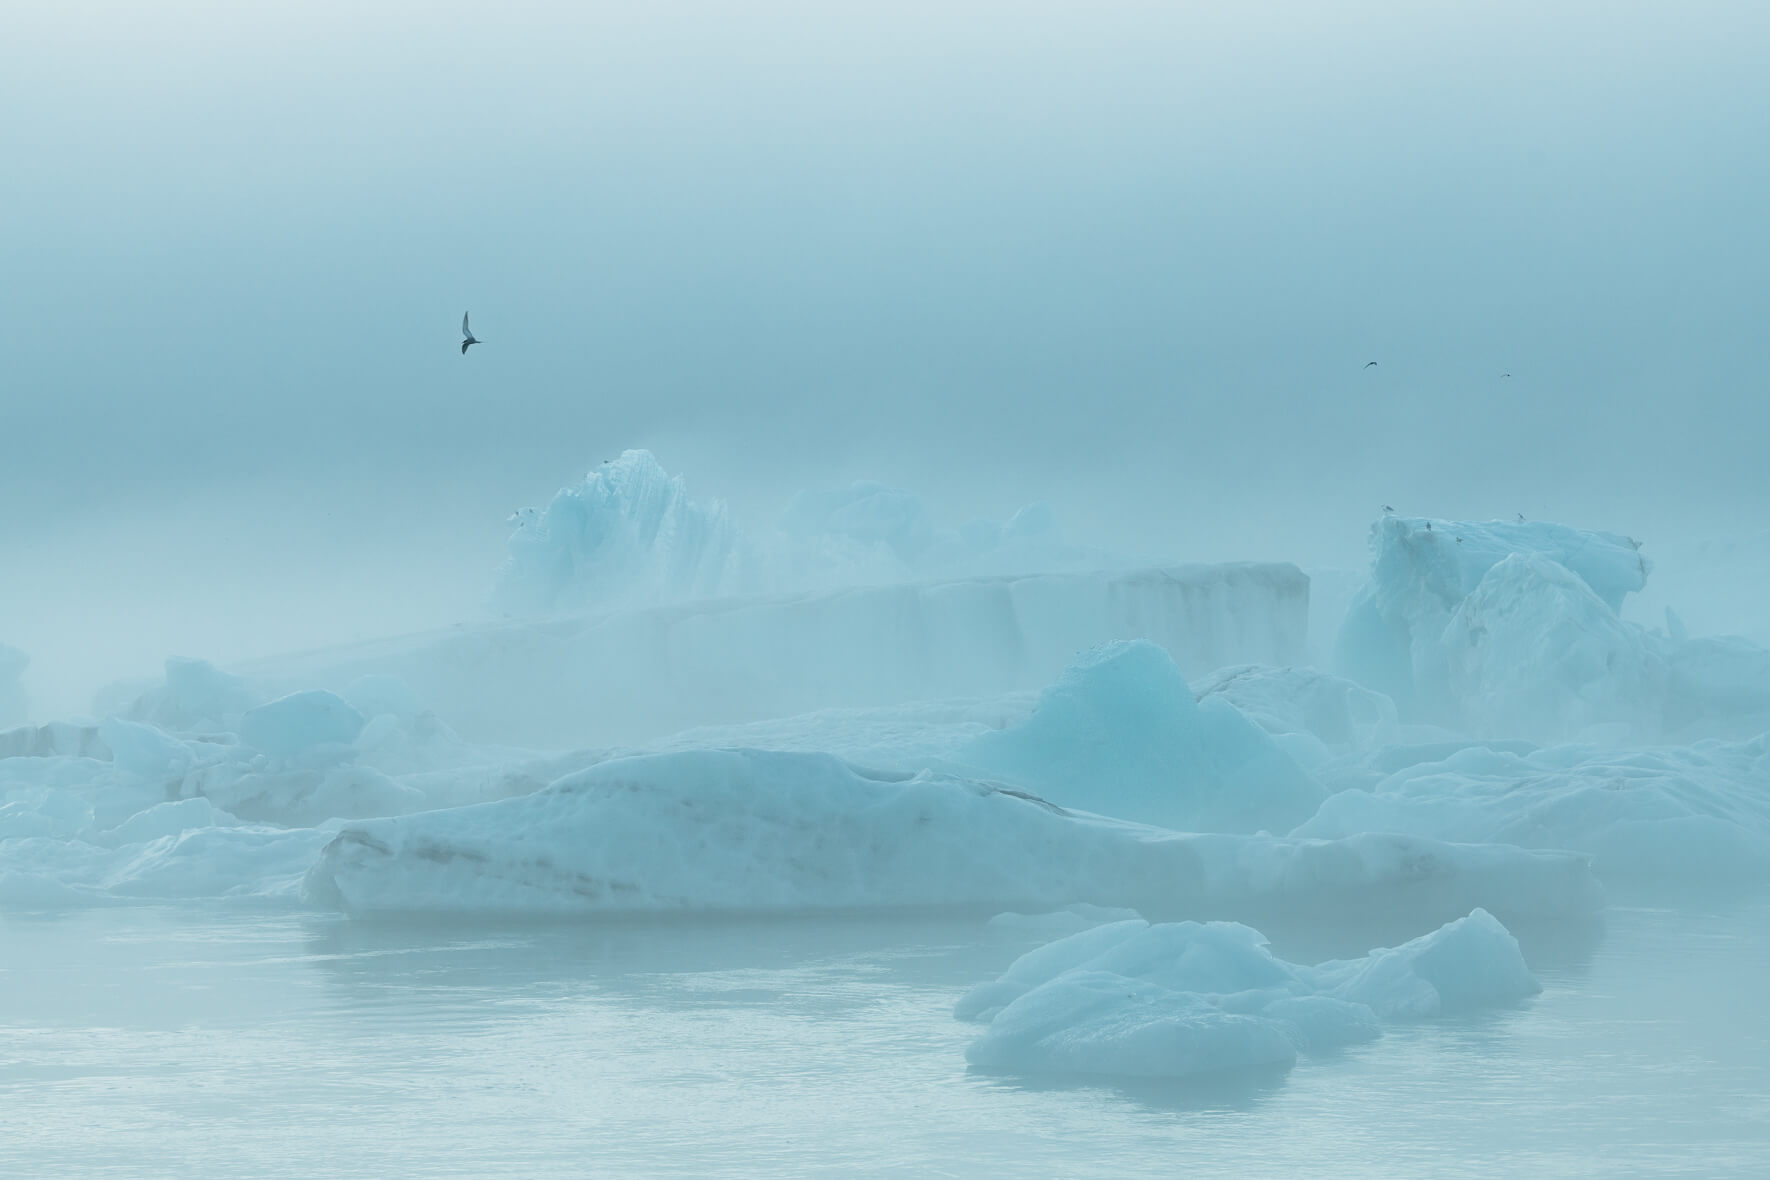 Icebergs on the Jökulsárlón glacier lagoon in fog with a seagull